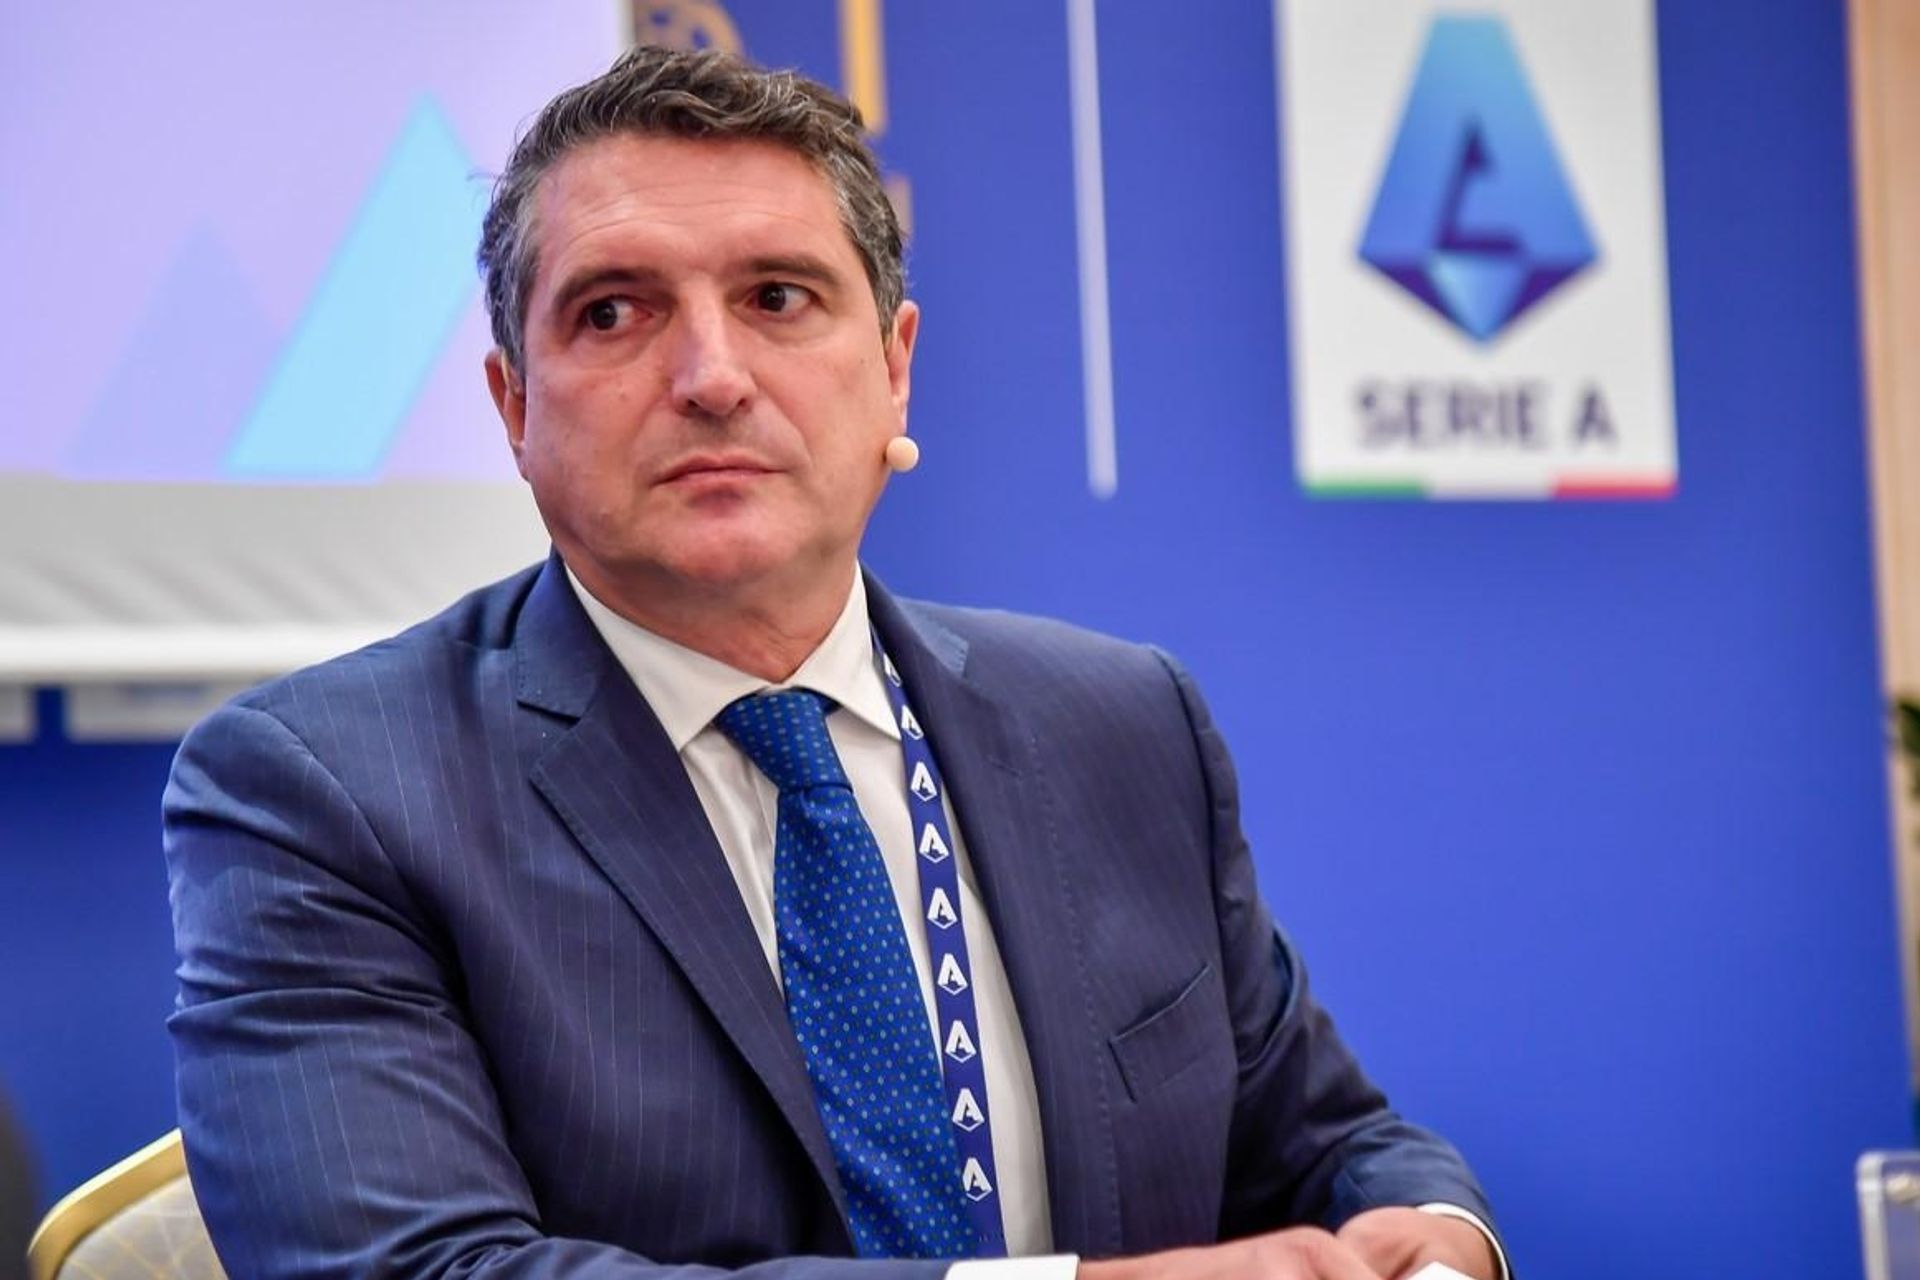 Luigi De Servio è Amministratore Delegato della Lega Serie A